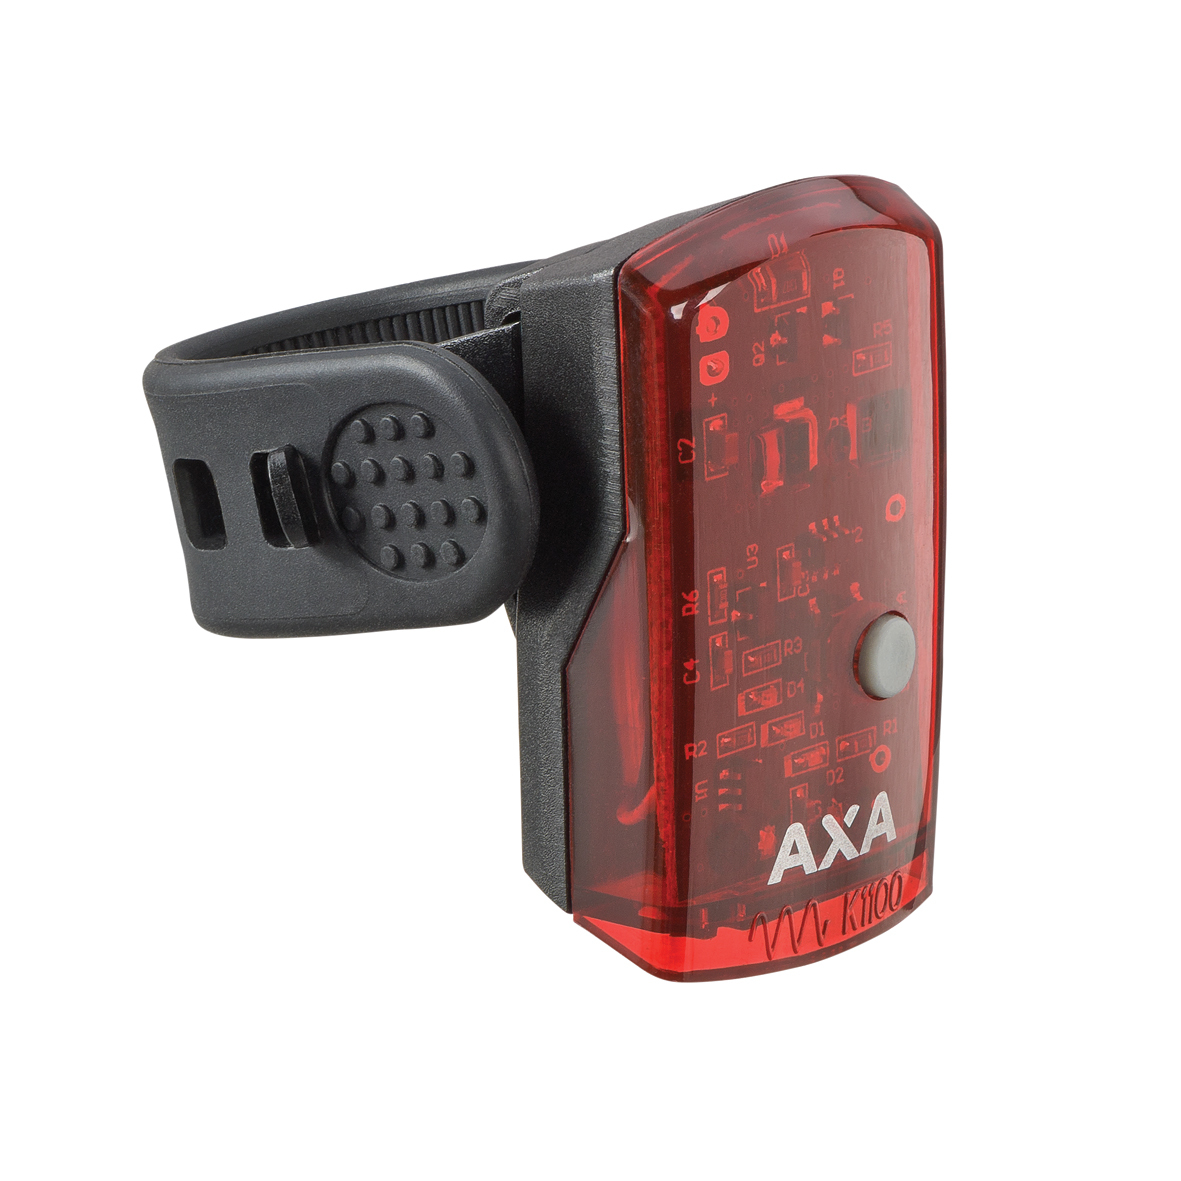 AXA GREENLINE zadní světlo 1 LED / USB nabíjení / indikátor baterie od ninex.cz